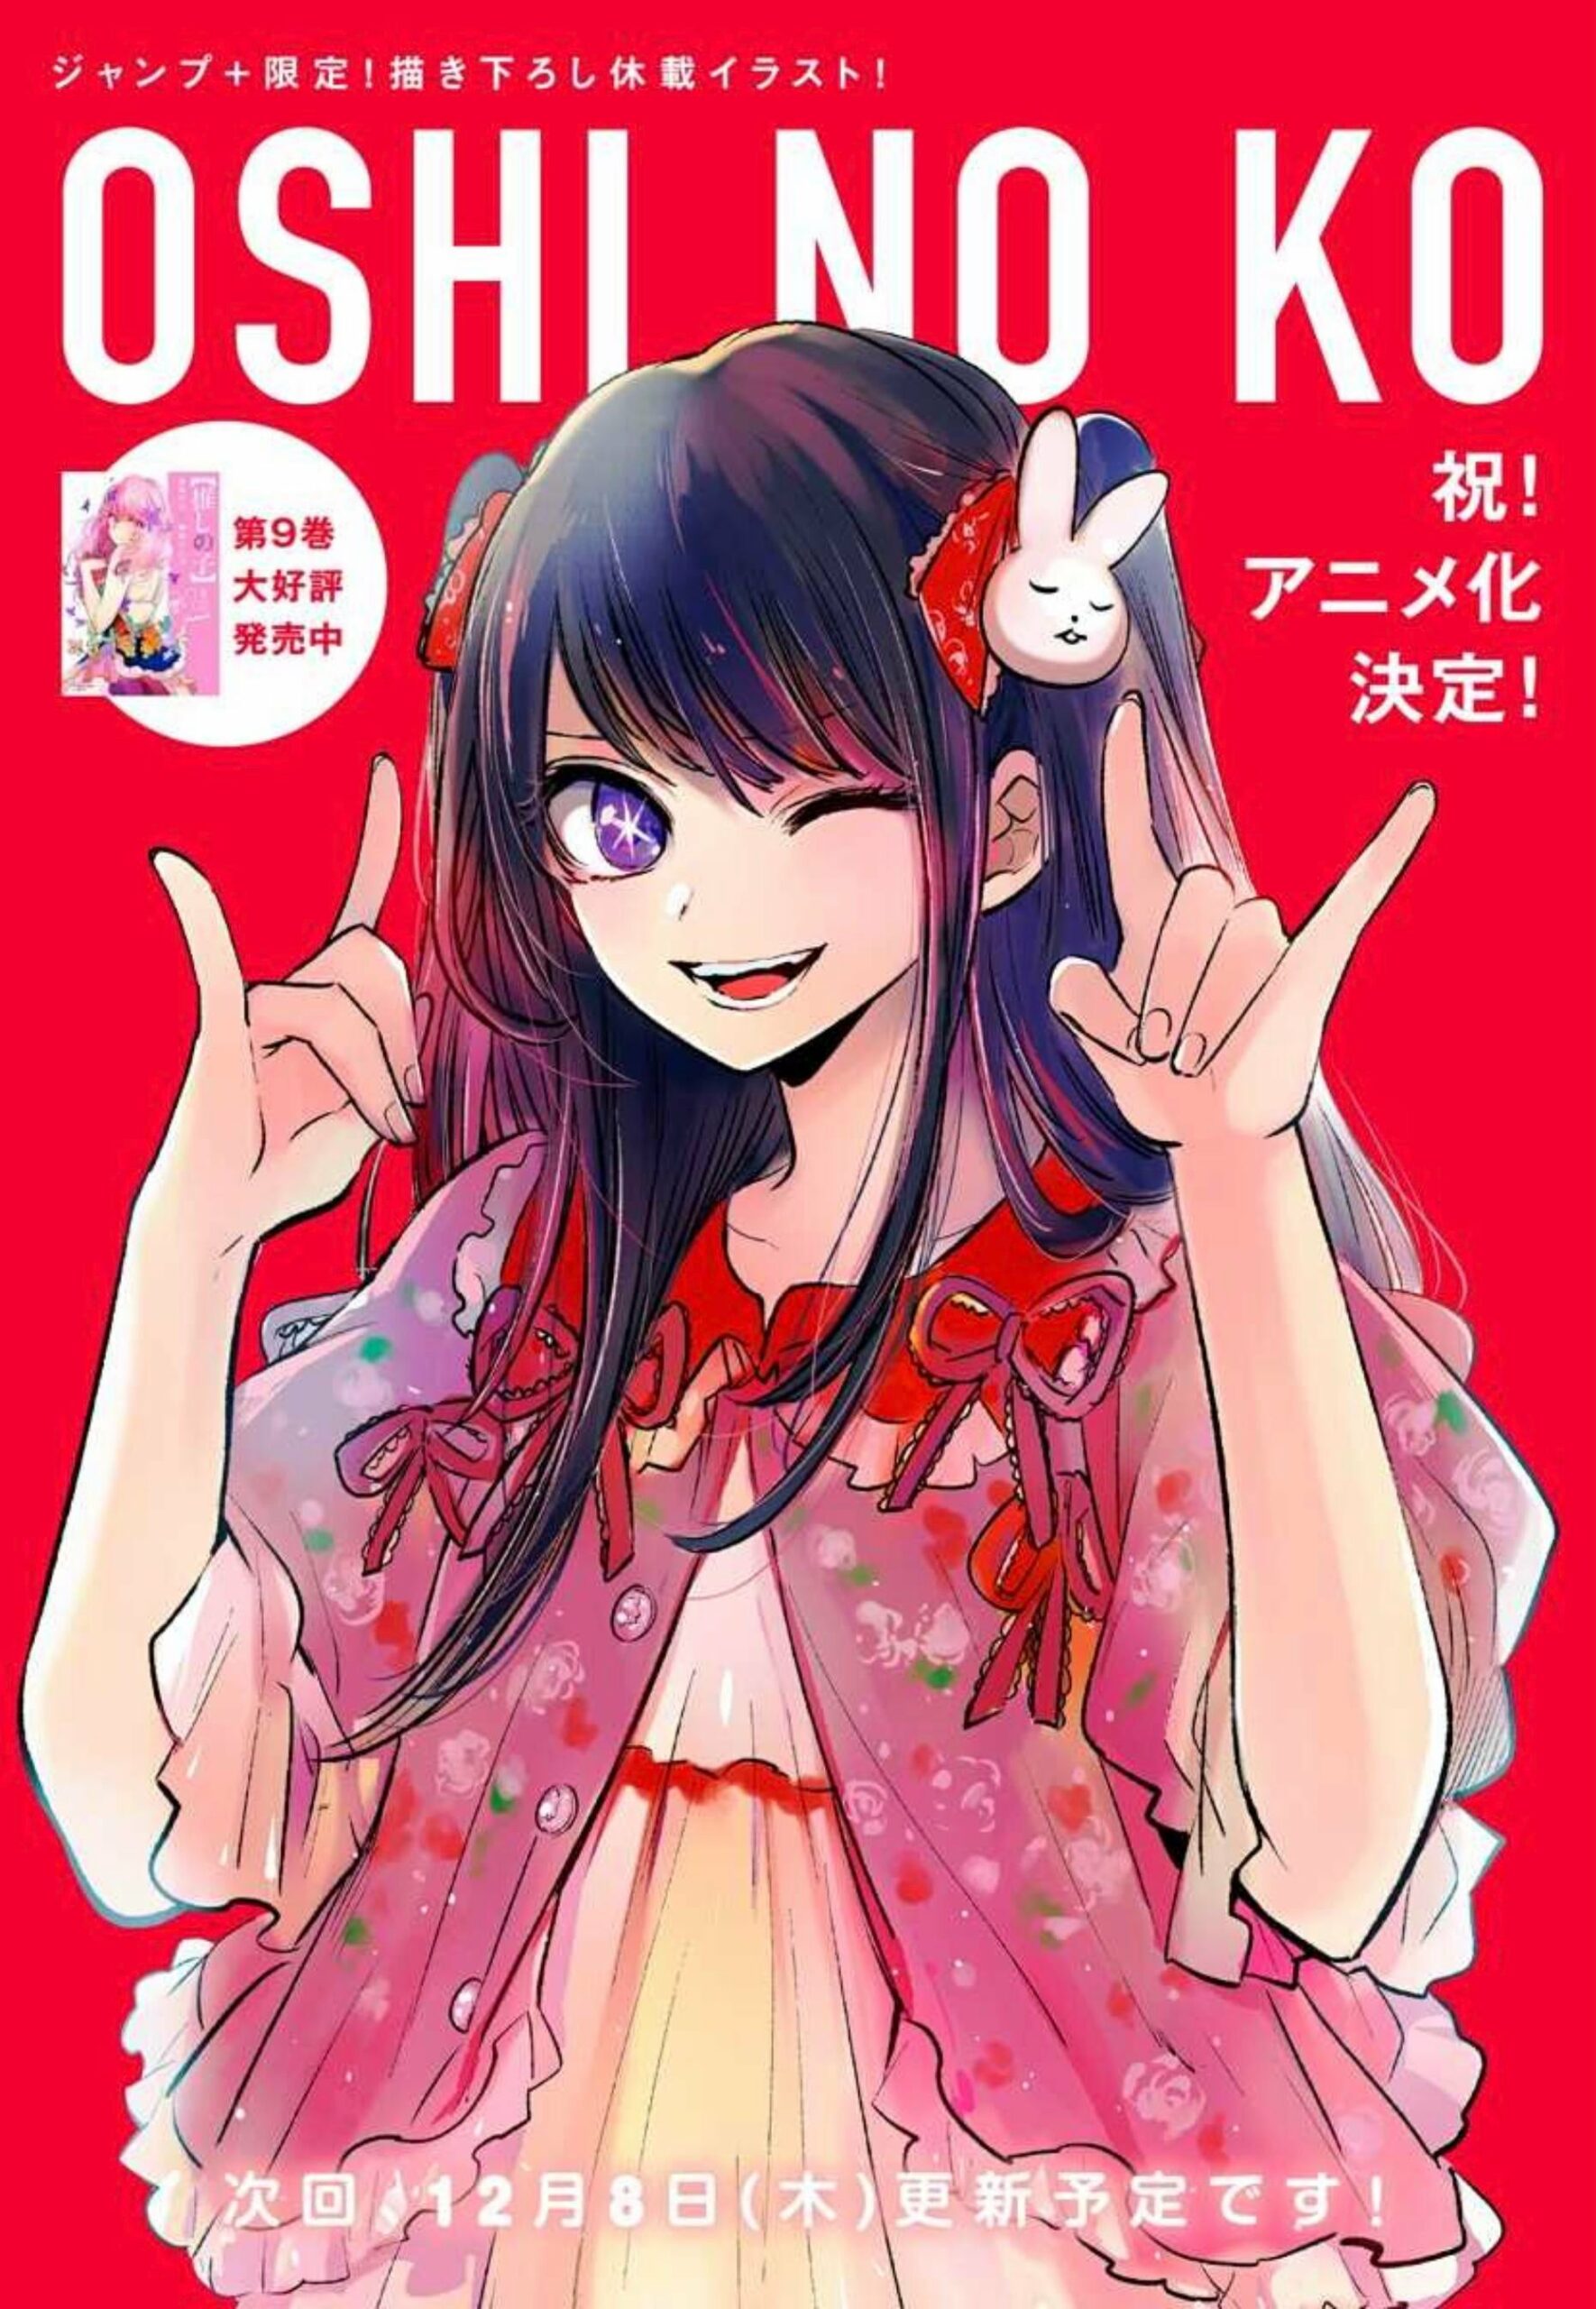 Ai Hoshino Oshi No Ko Icon Chef D Oeuvre Fan Art Cute Anime My Xxx Hot Girl